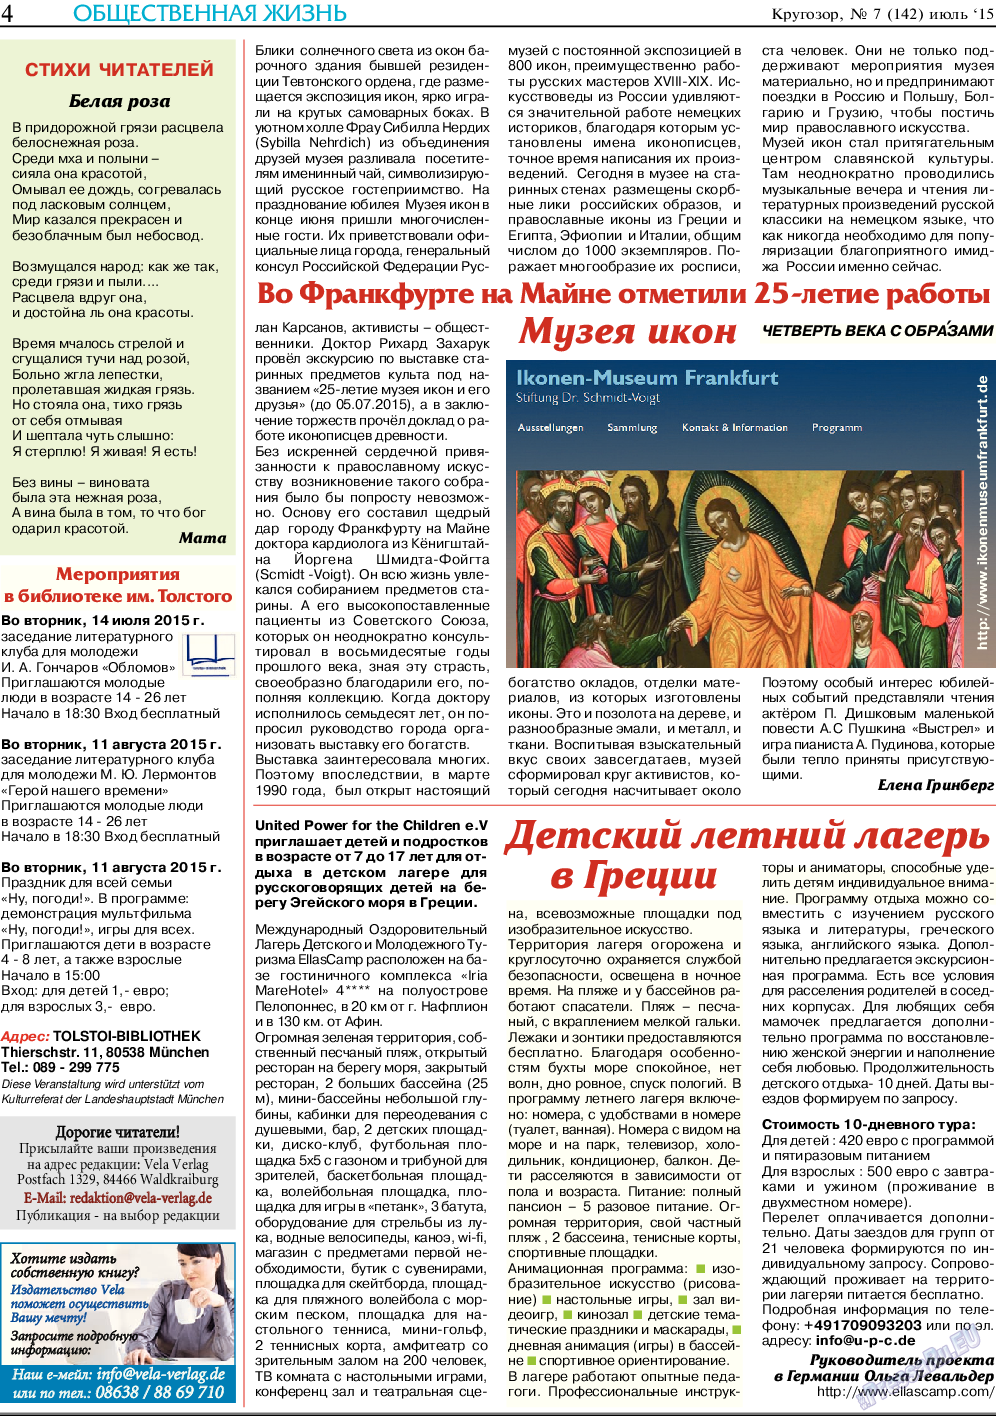 Кругозор, газета. 2015 №7 стр.4